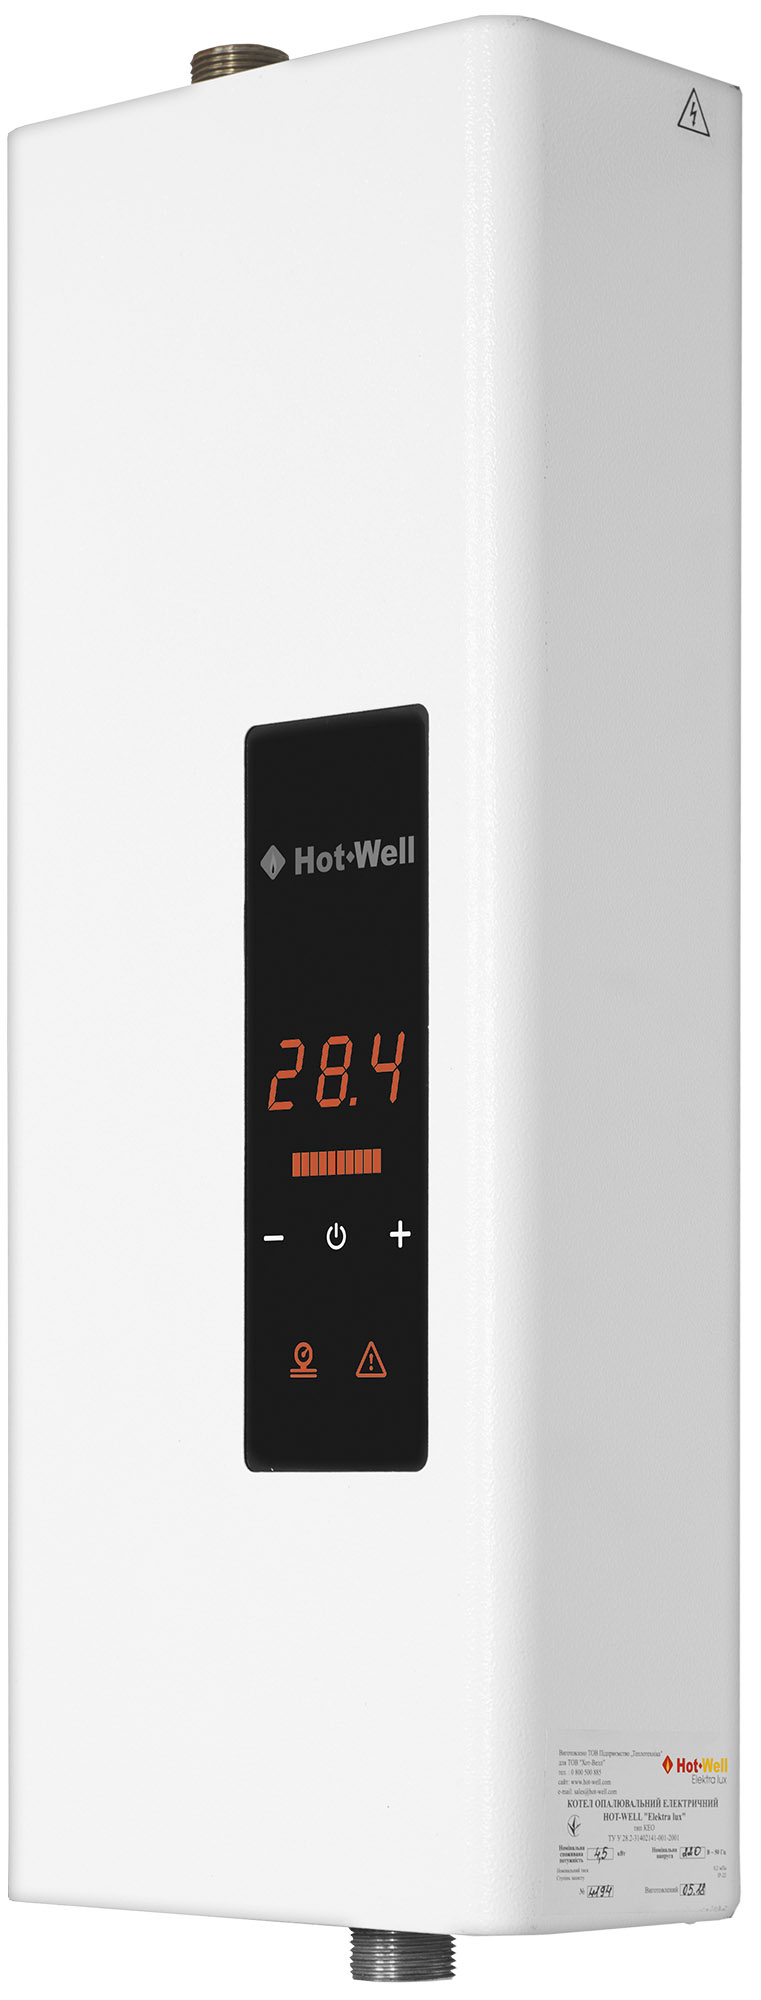 Котел Hot-Well електричний Hot-Well Elektra LUX S 4,5/220